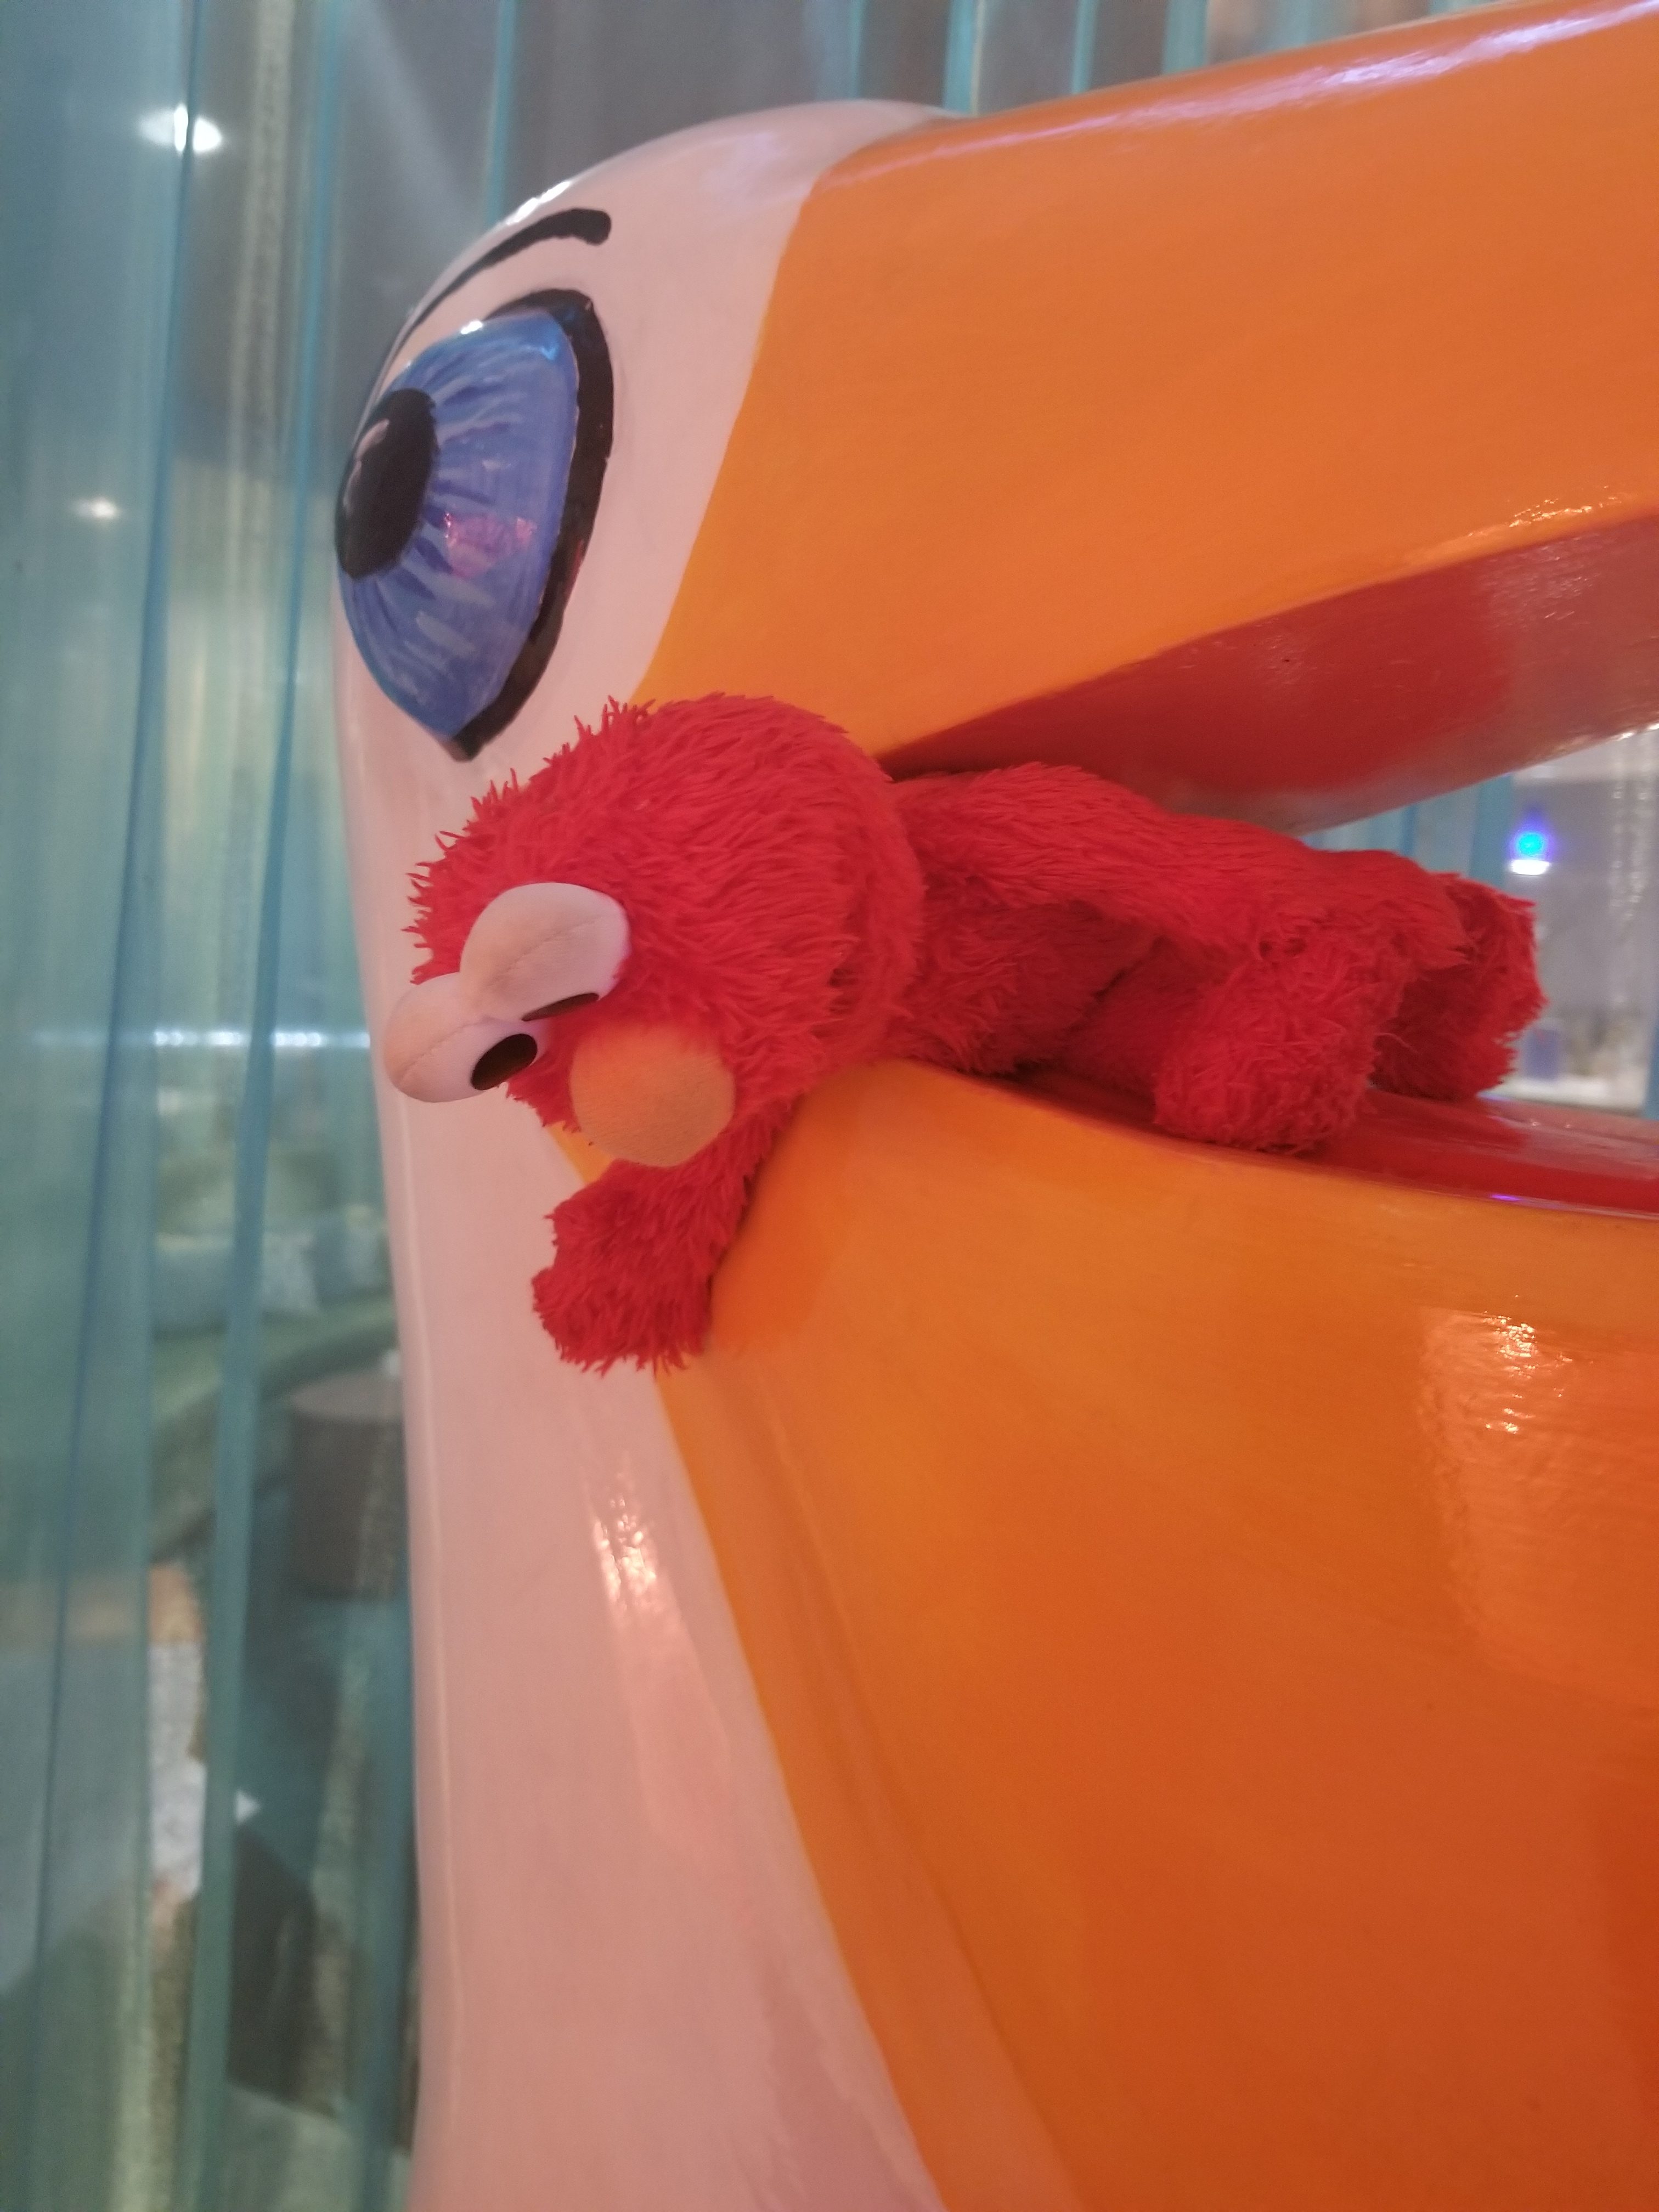 Elmo Met The Hotel's Pelican